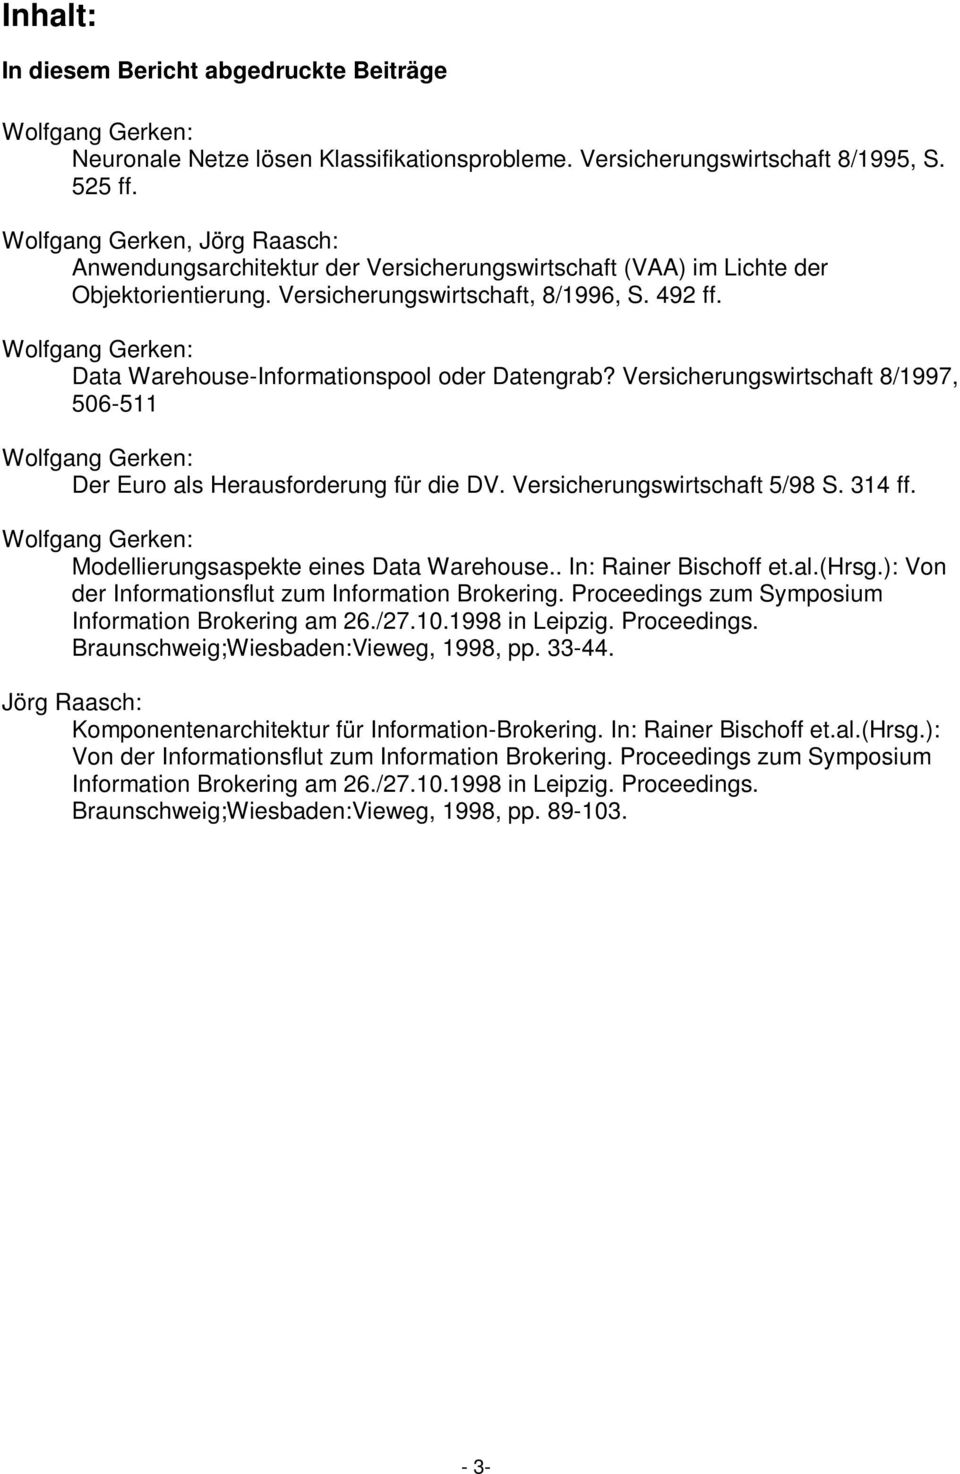 Wolfgang Gerken: Data Warehouse-Informationspool oder Datengrab? Versicherungswirtschaft 8/1997, 506-511 Wolfgang Gerken: Der Euro als Herausforderung für die DV. Versicherungswirtschaft 5/98 S.